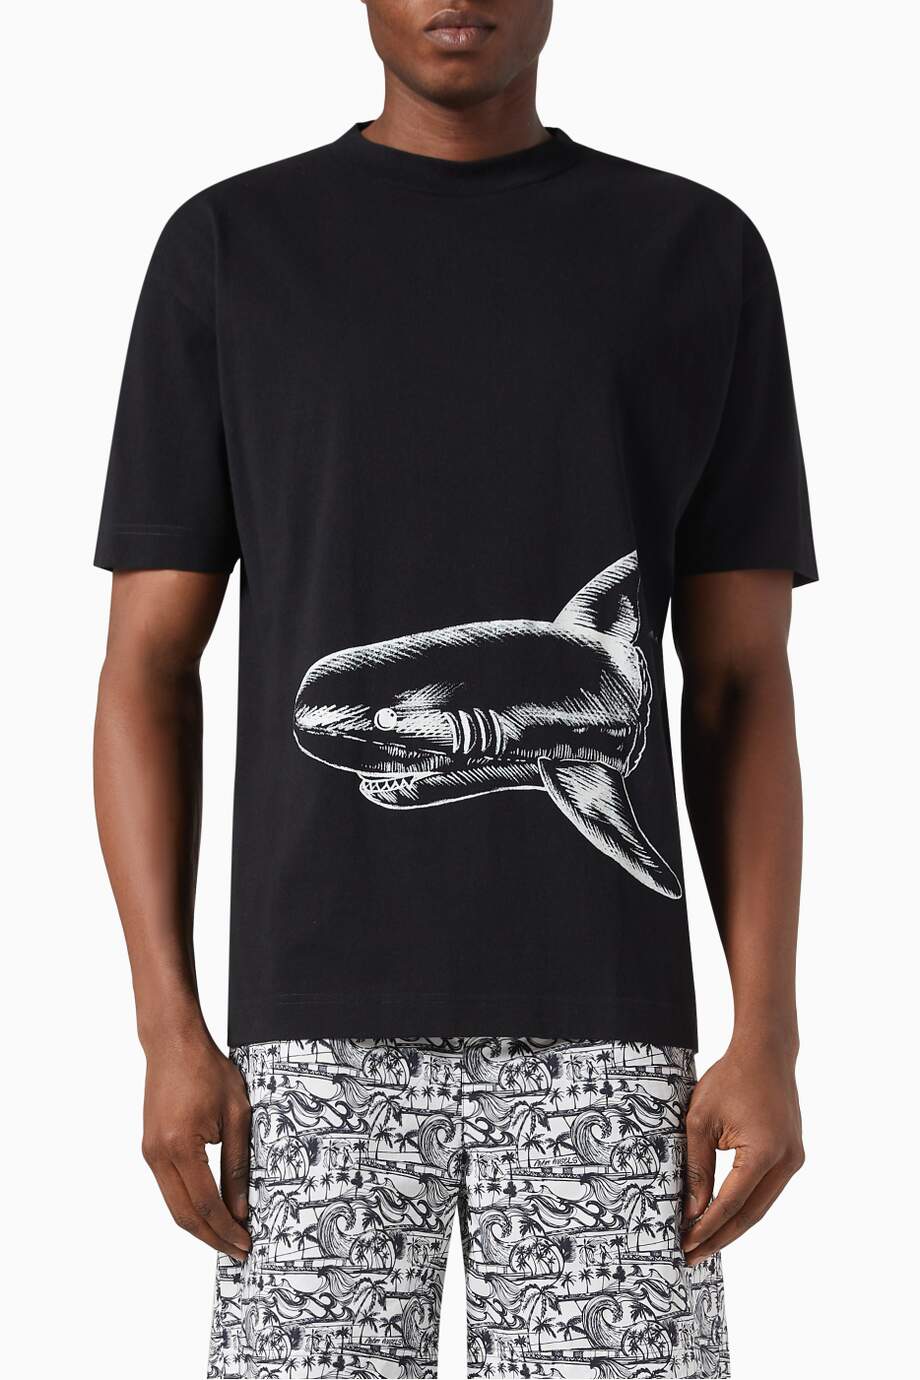 Palm Angels Broken Shark T-shirt in Cotton Jersey